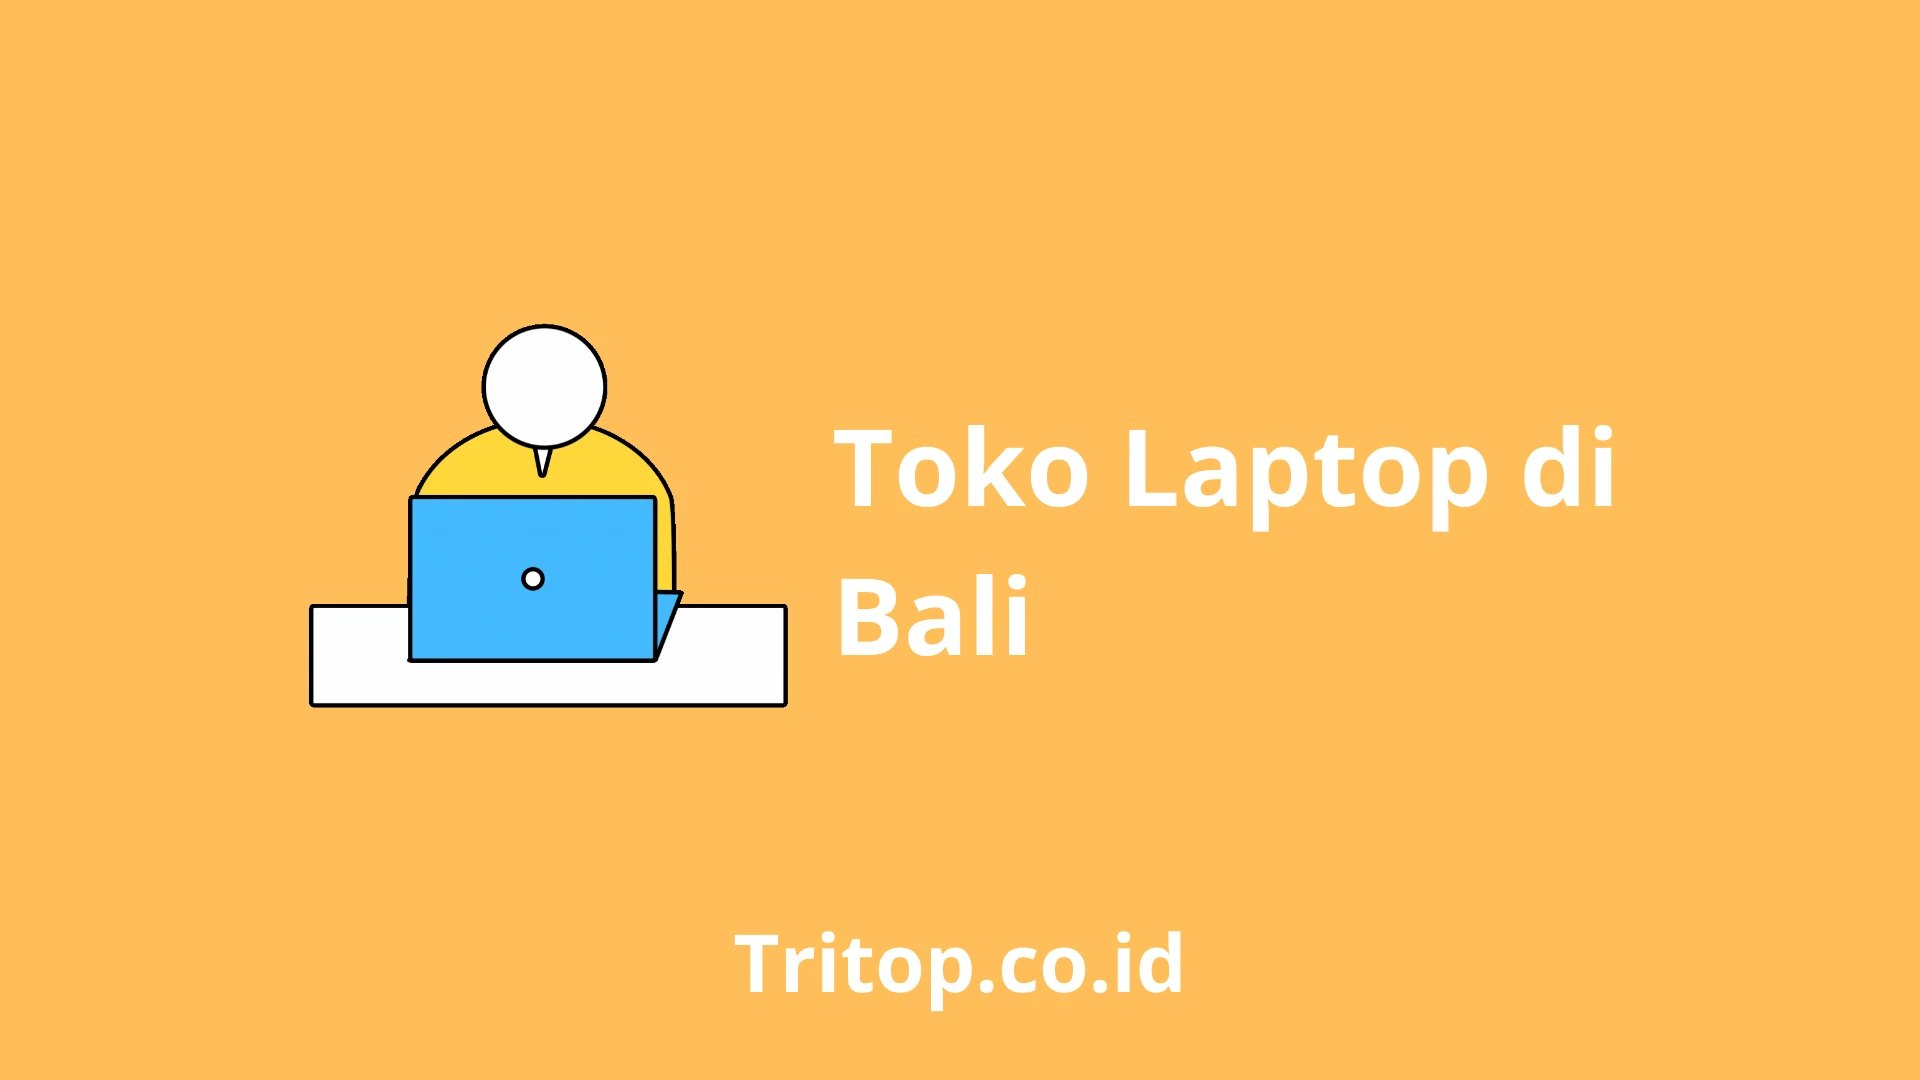 Toko Laptop di Bali Tritop.co.id